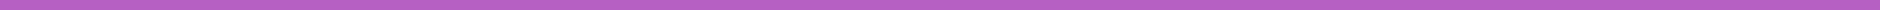 EC-Divider-Bar-Purple.jpg